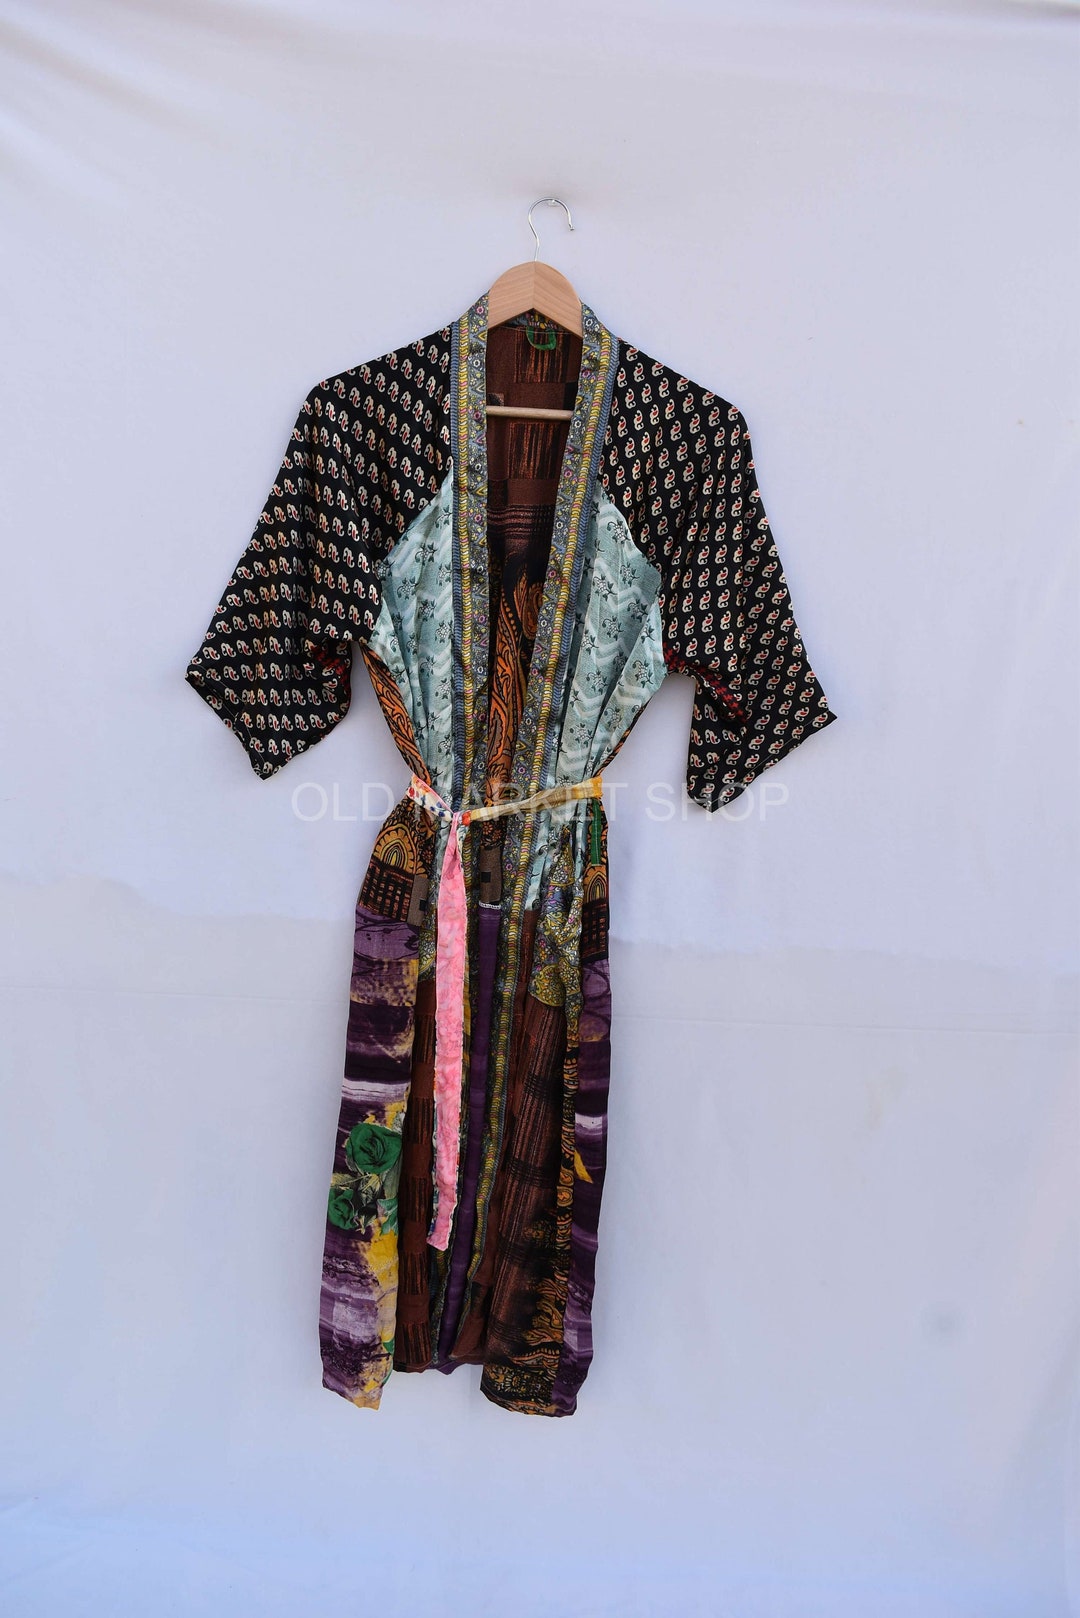 Bridal Kimono Dress Sari Fabric Kimono Jacket Oriental Robe - Etsy